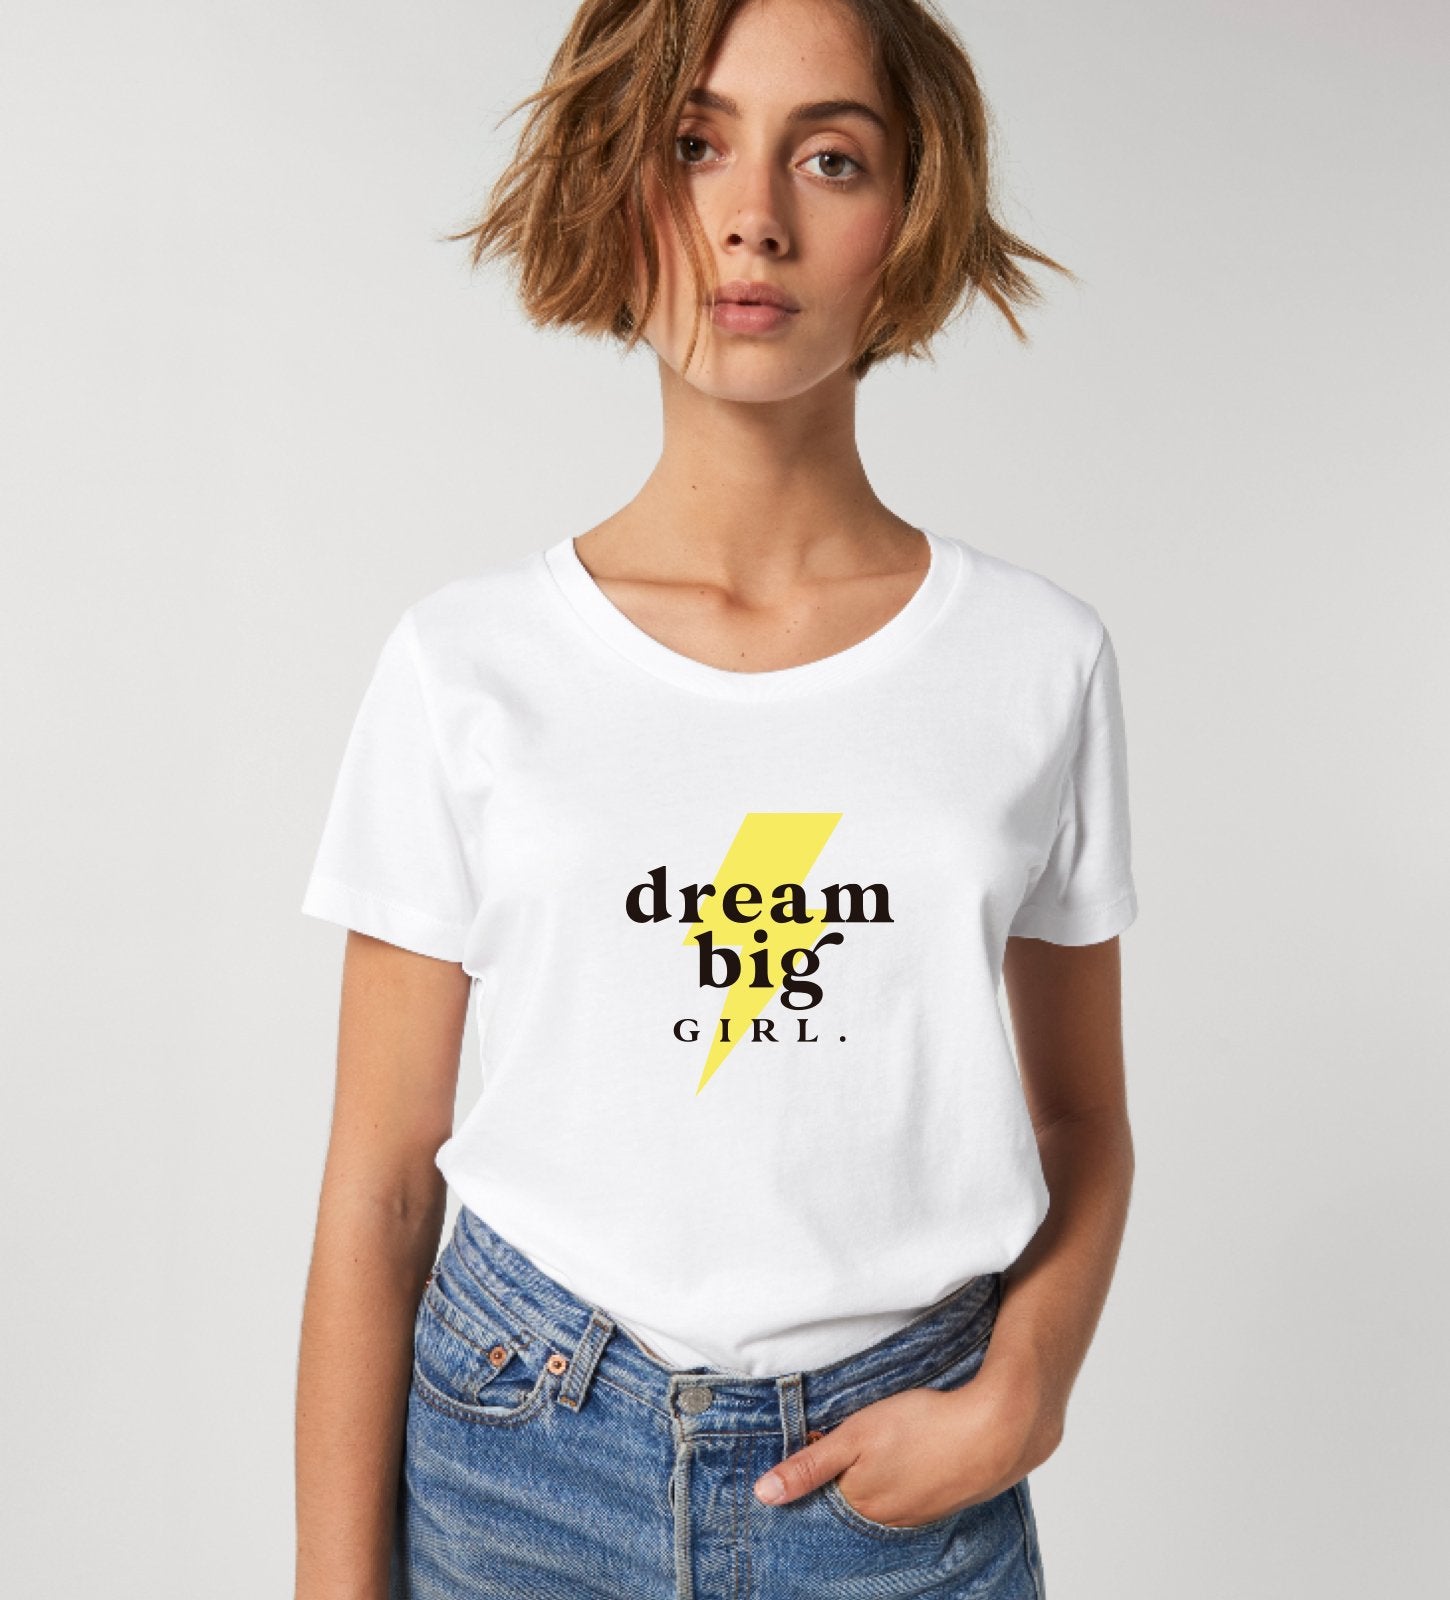 Camiseta con mensaje dream big GIRL de Lorem Ipsum Brand. Camiseta para mujer y niña, de manga corta en color blanco con mensaje Dream Big  GIRL en amarillo en la parte delantera. 100% algodón orgánico. Impresión digital de alta calidad. 100% sostenible.